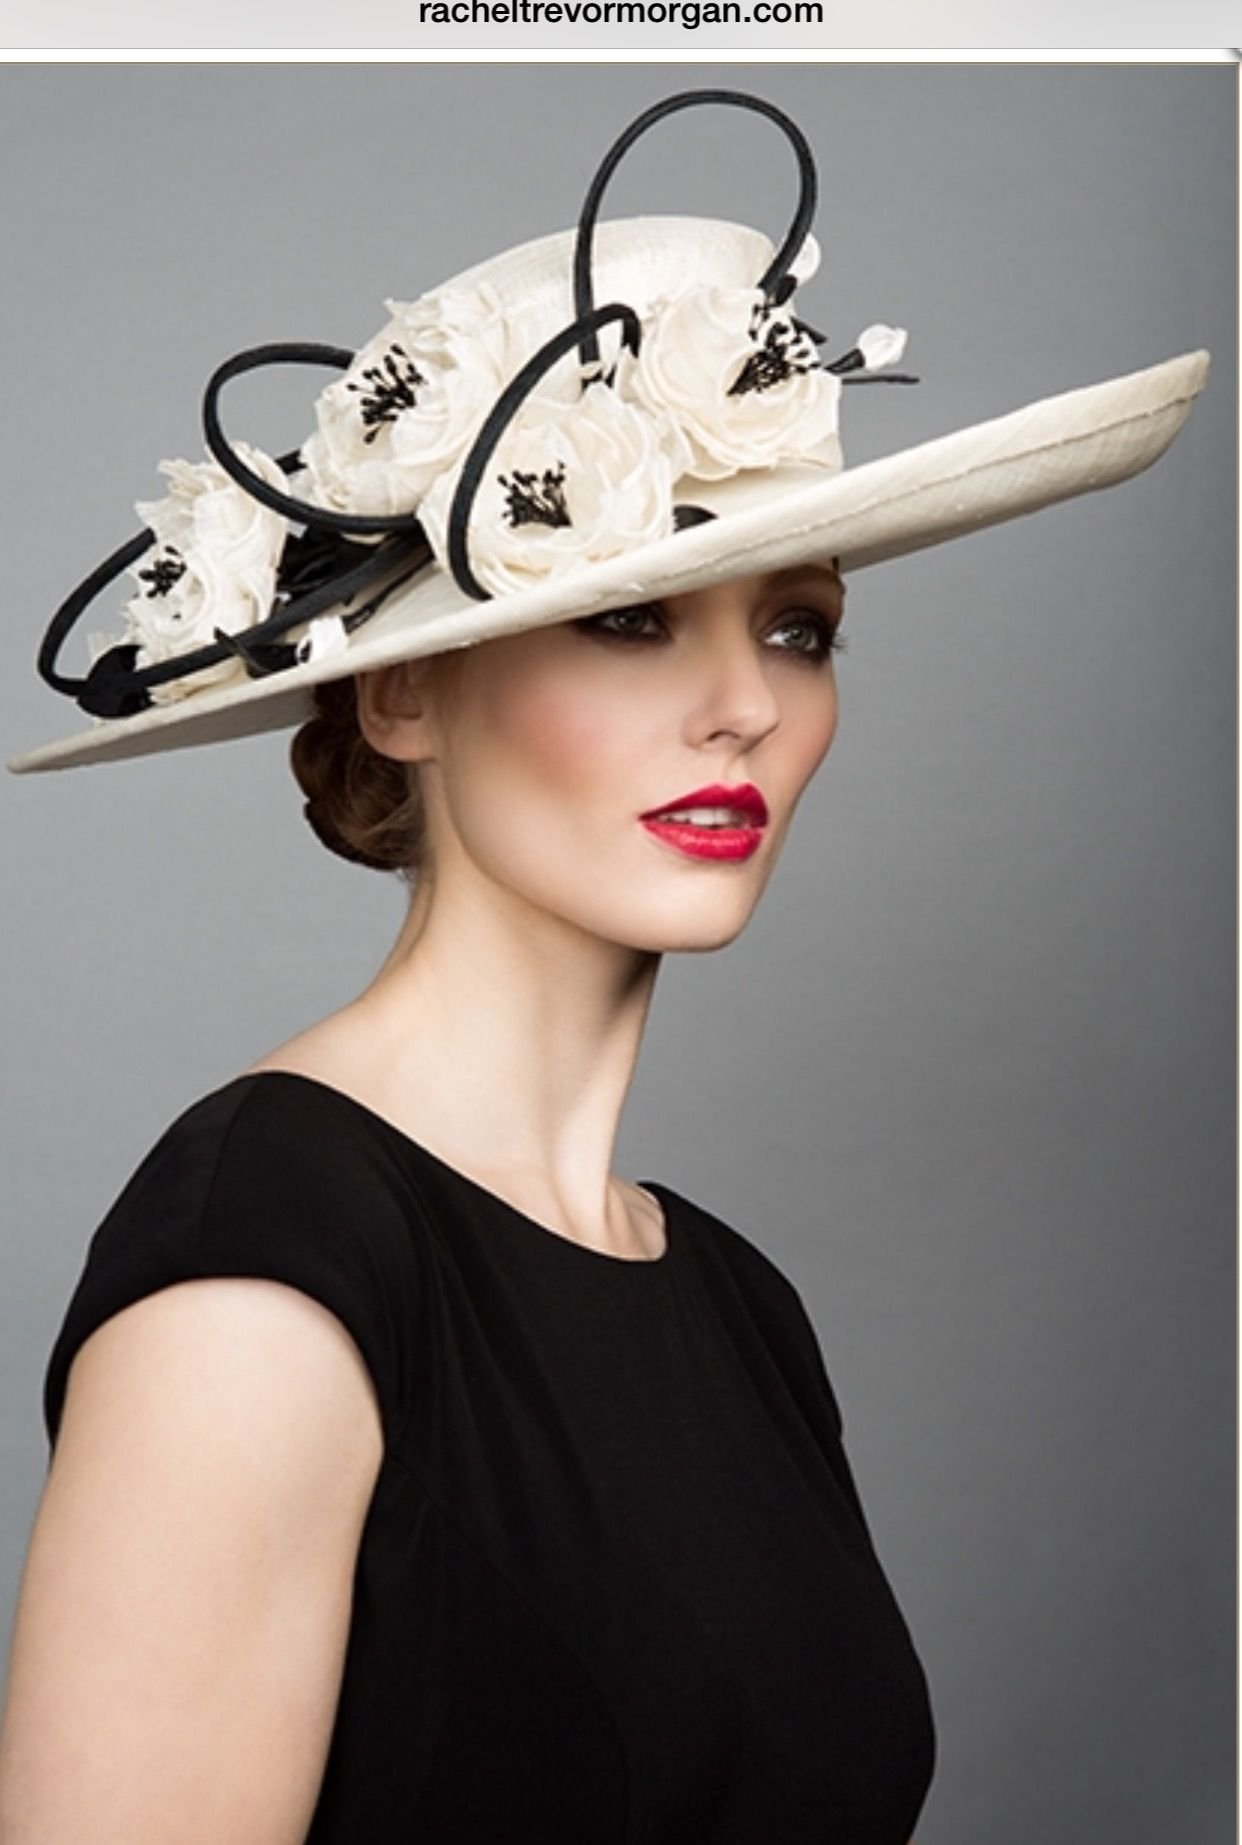 Примерять шляпу. Шляпки от Рейчел Тревор Морган. Шляпа "Рейчел". Шляпа женская. Дама в шляпке.